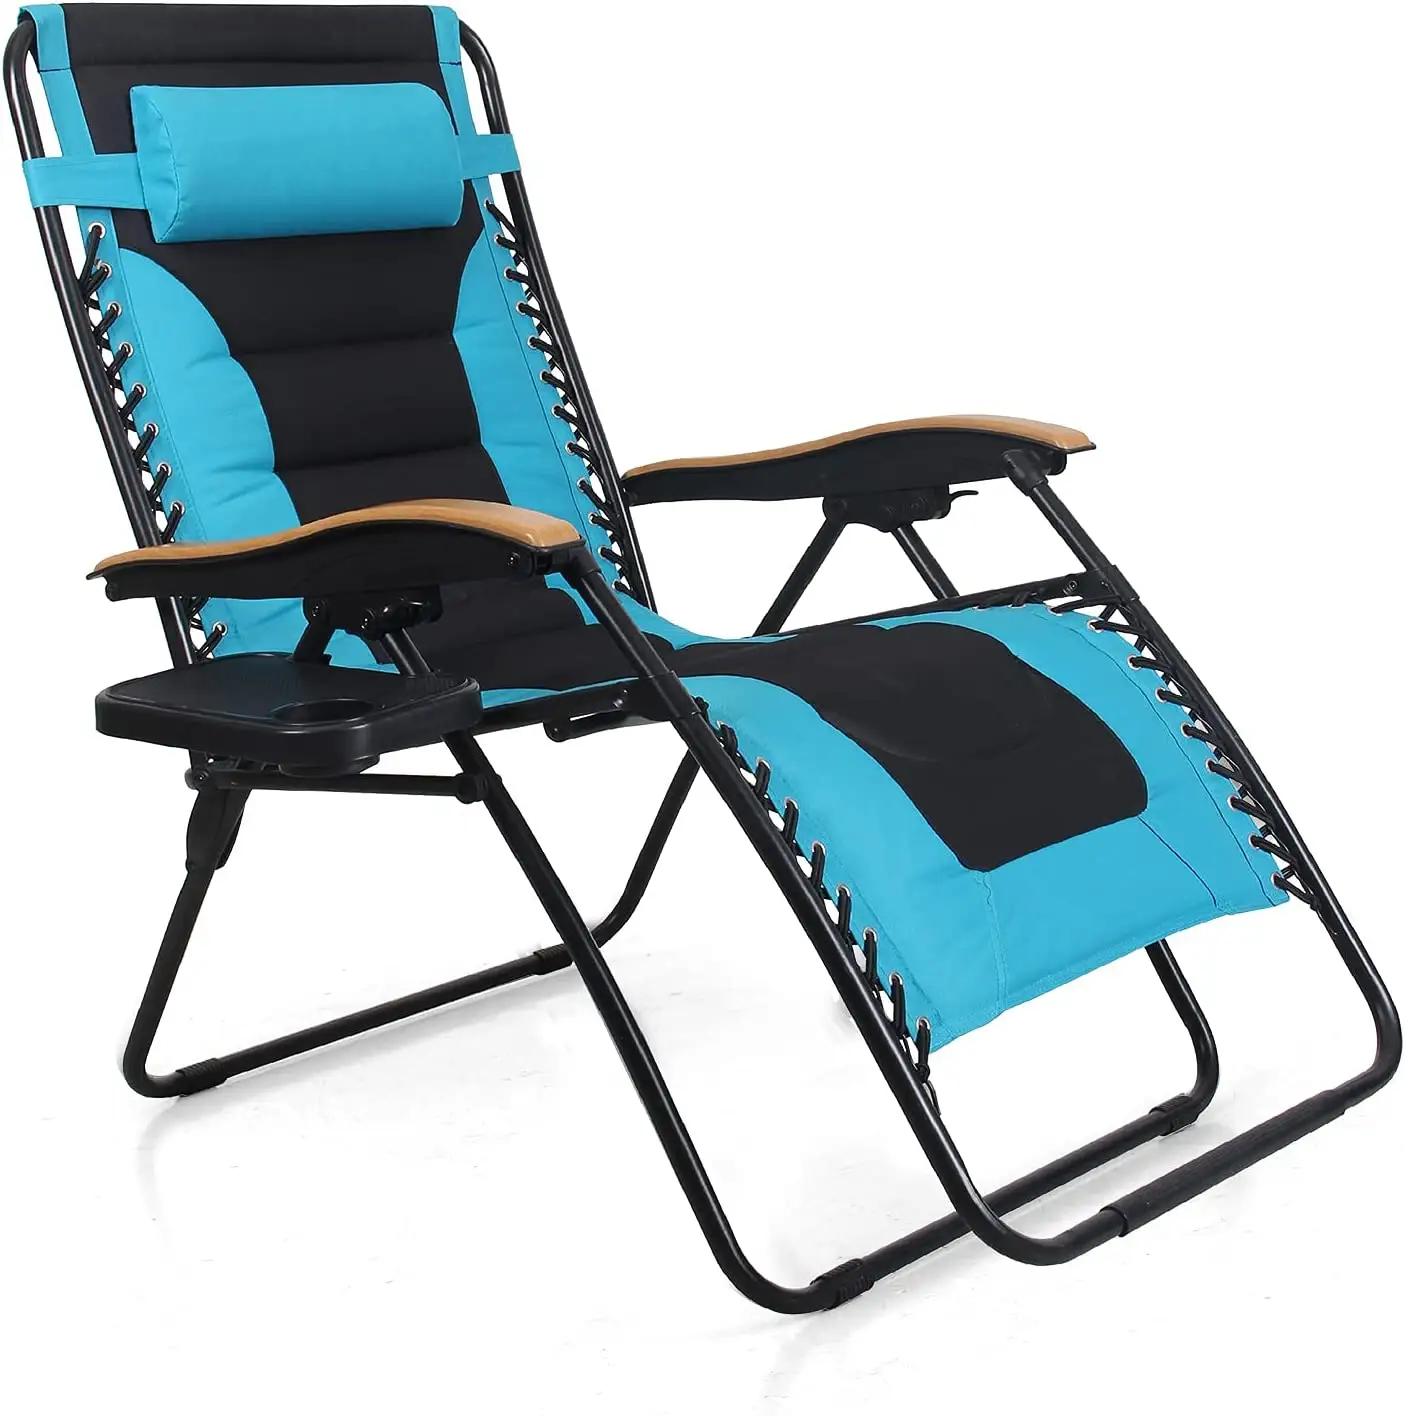 Outdoor Luxus Stahl Mesh gepolstert Schwerelosigkeit Relax Chair Recliner Verstellbare Klapp lounge mit Kissen Rasen Garten verwenden